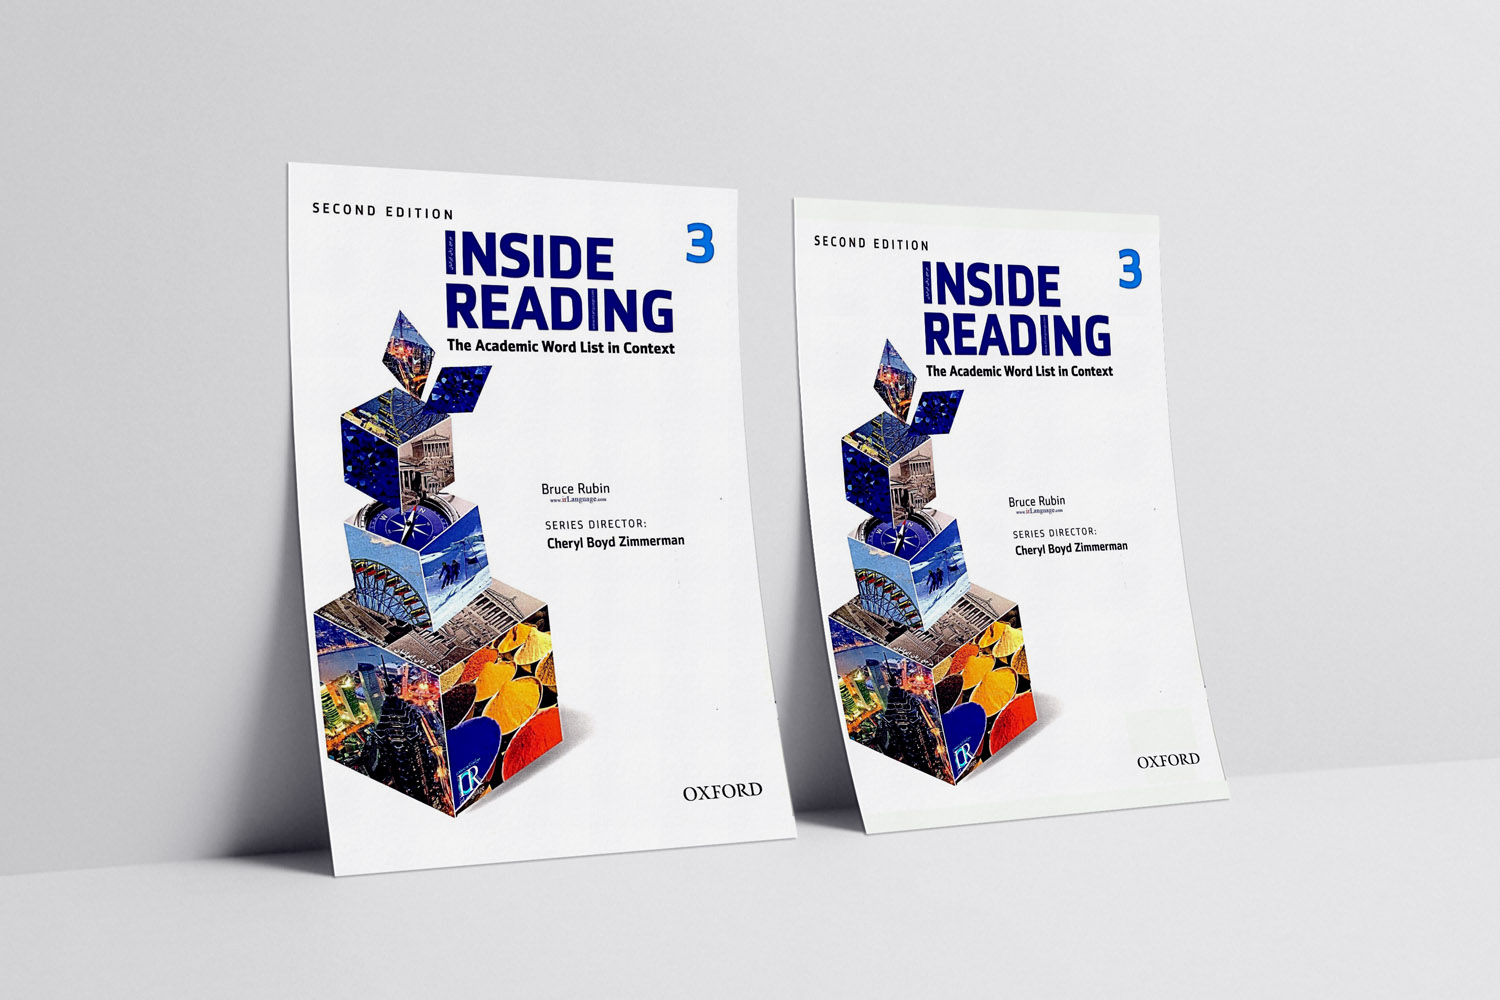 Inside Reading 3